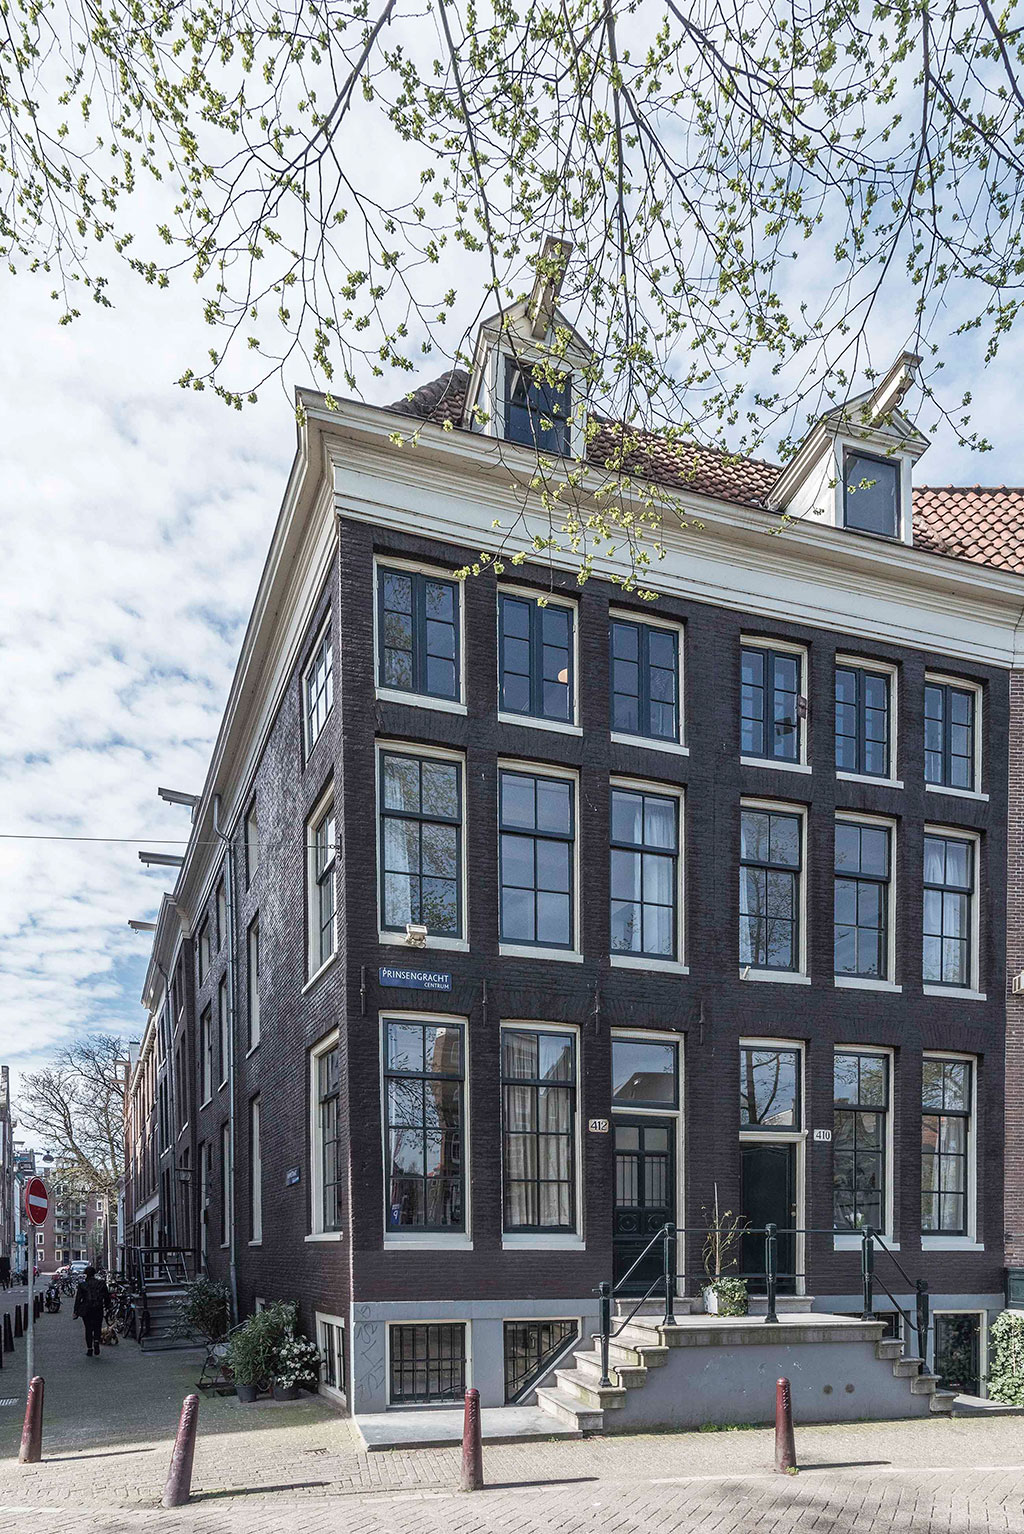 Diseño casas holandesas